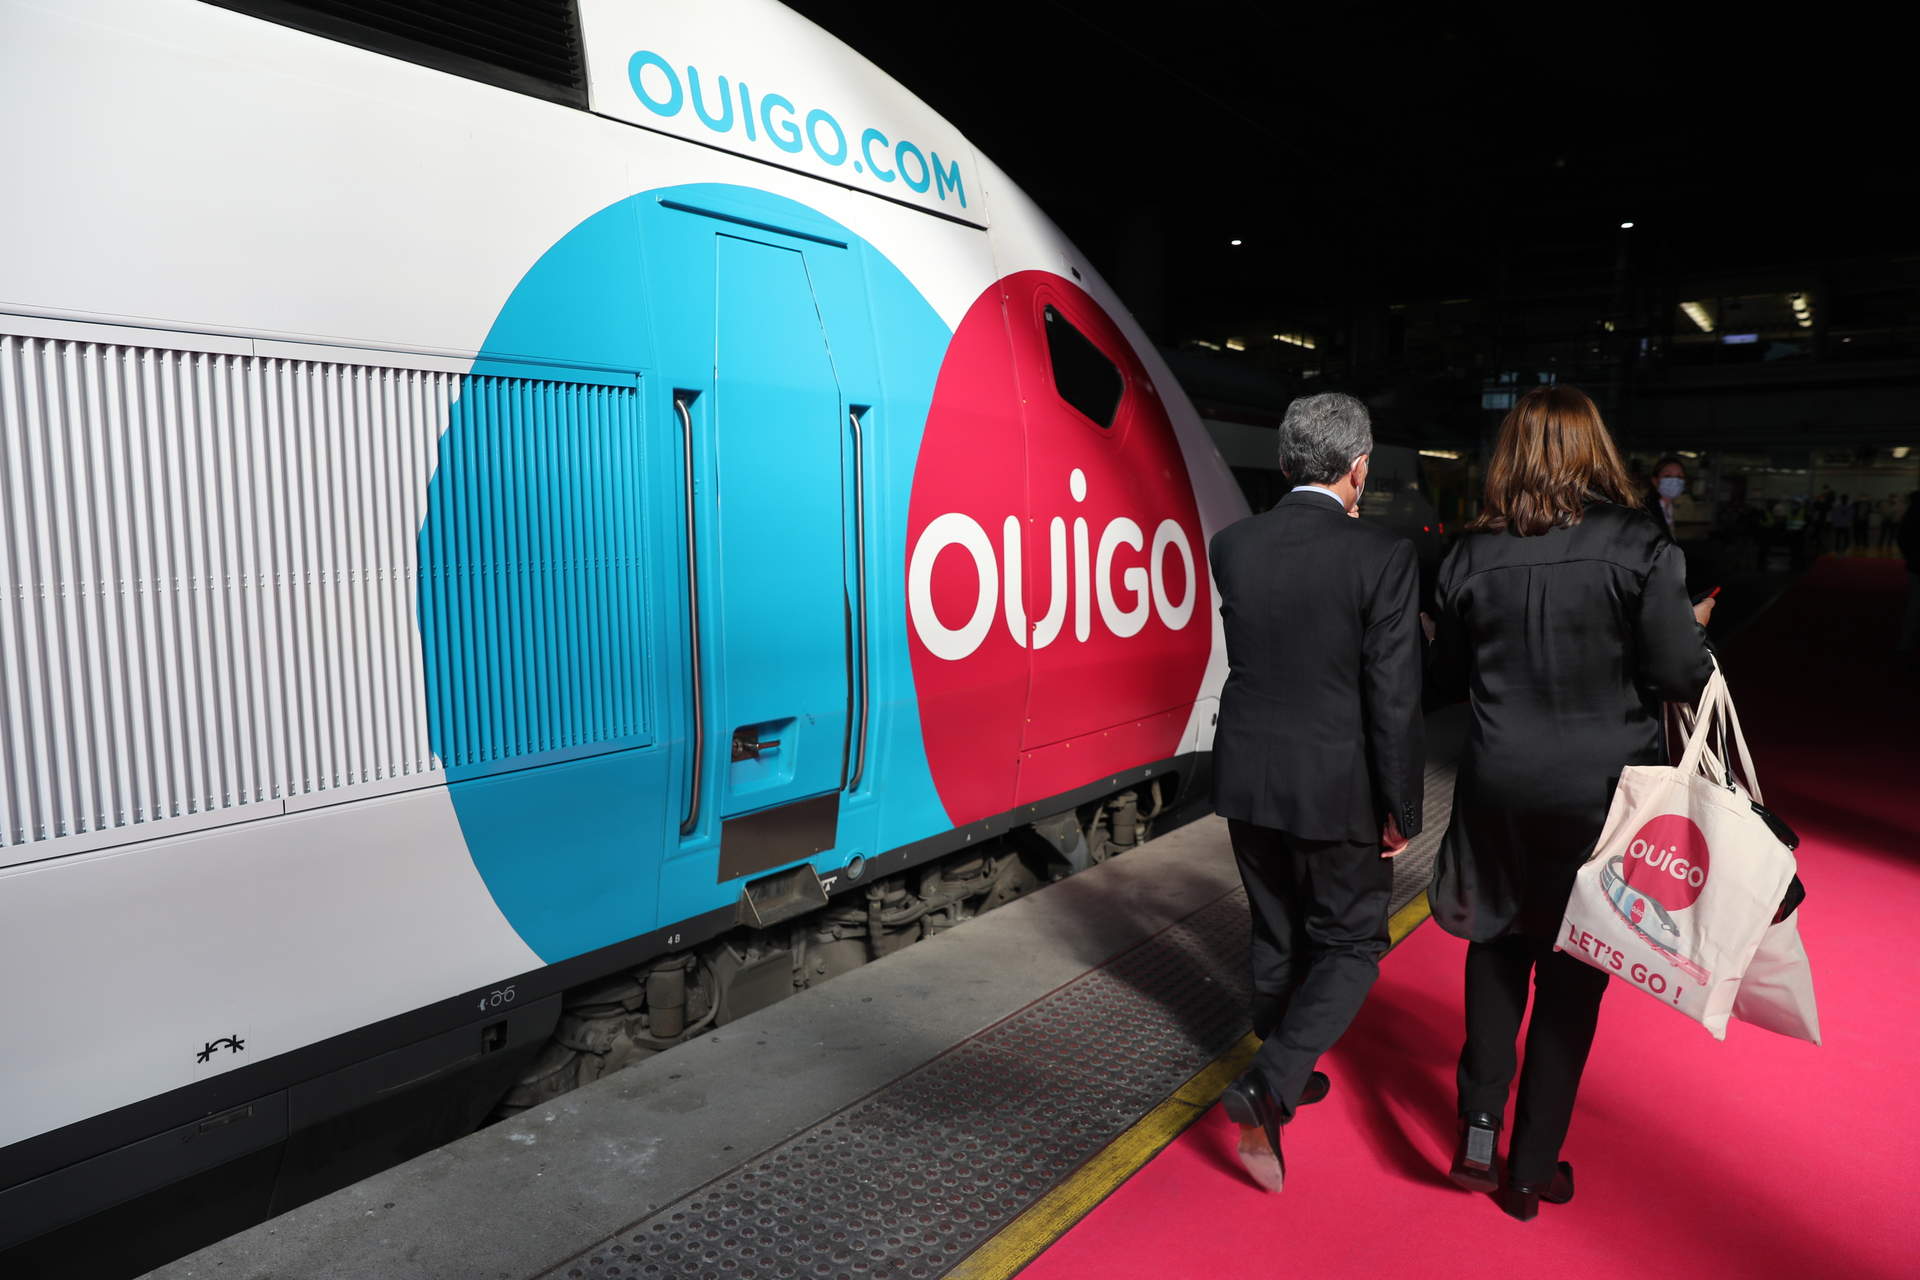 Ouigo lanza el 80% de sus billetes a menos de 25 euros para viajar en sus trenes hasta el 10 de marzo